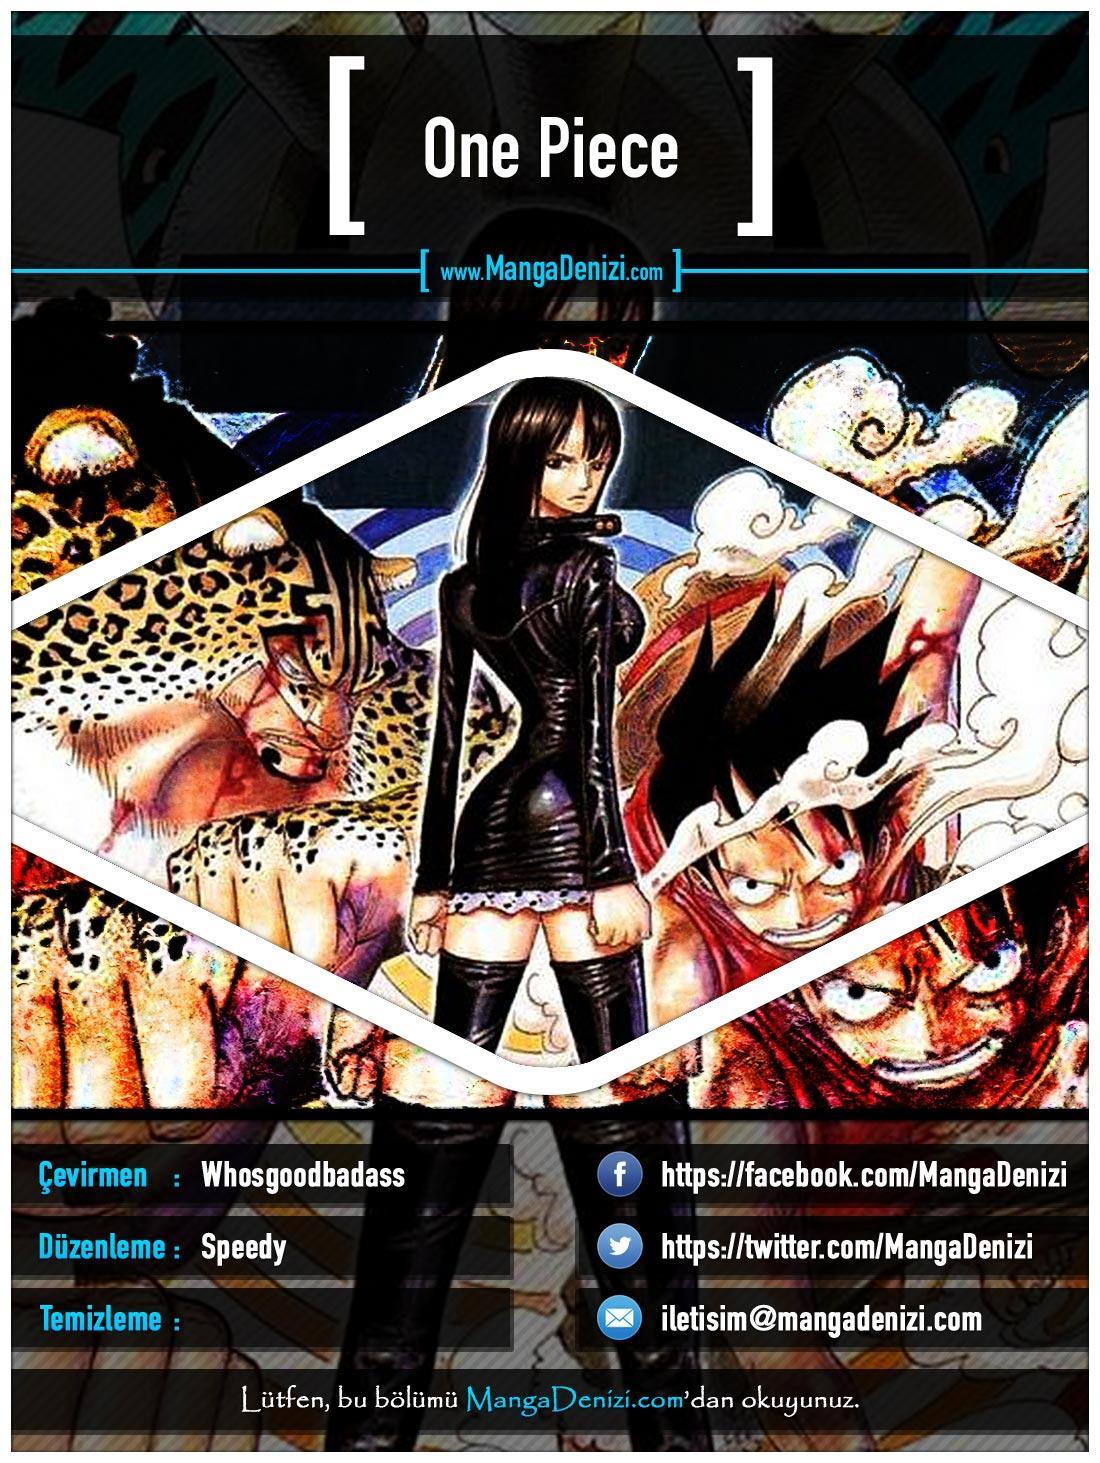 One Piece [Renkli] mangasının 0392 bölümünün 1. sayfasını okuyorsunuz.